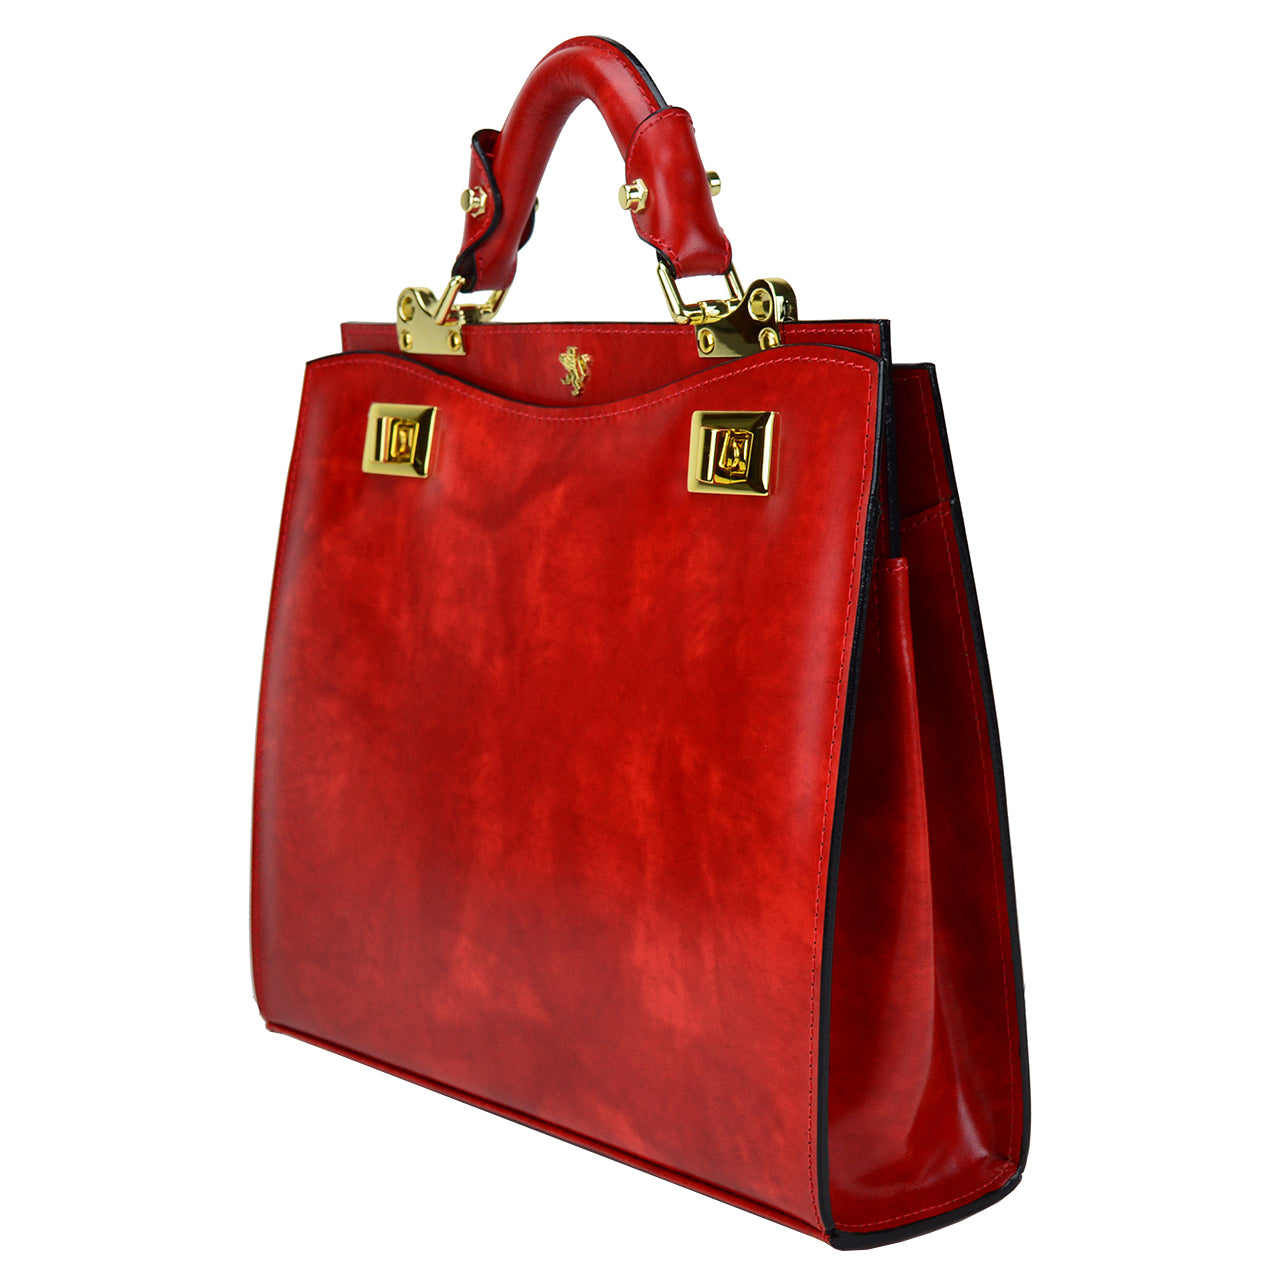 Pratesi Anna Maria Luisa de' Medici Medium Lady Bag in genuine Italian leather - Brunelleschi Leather Pink